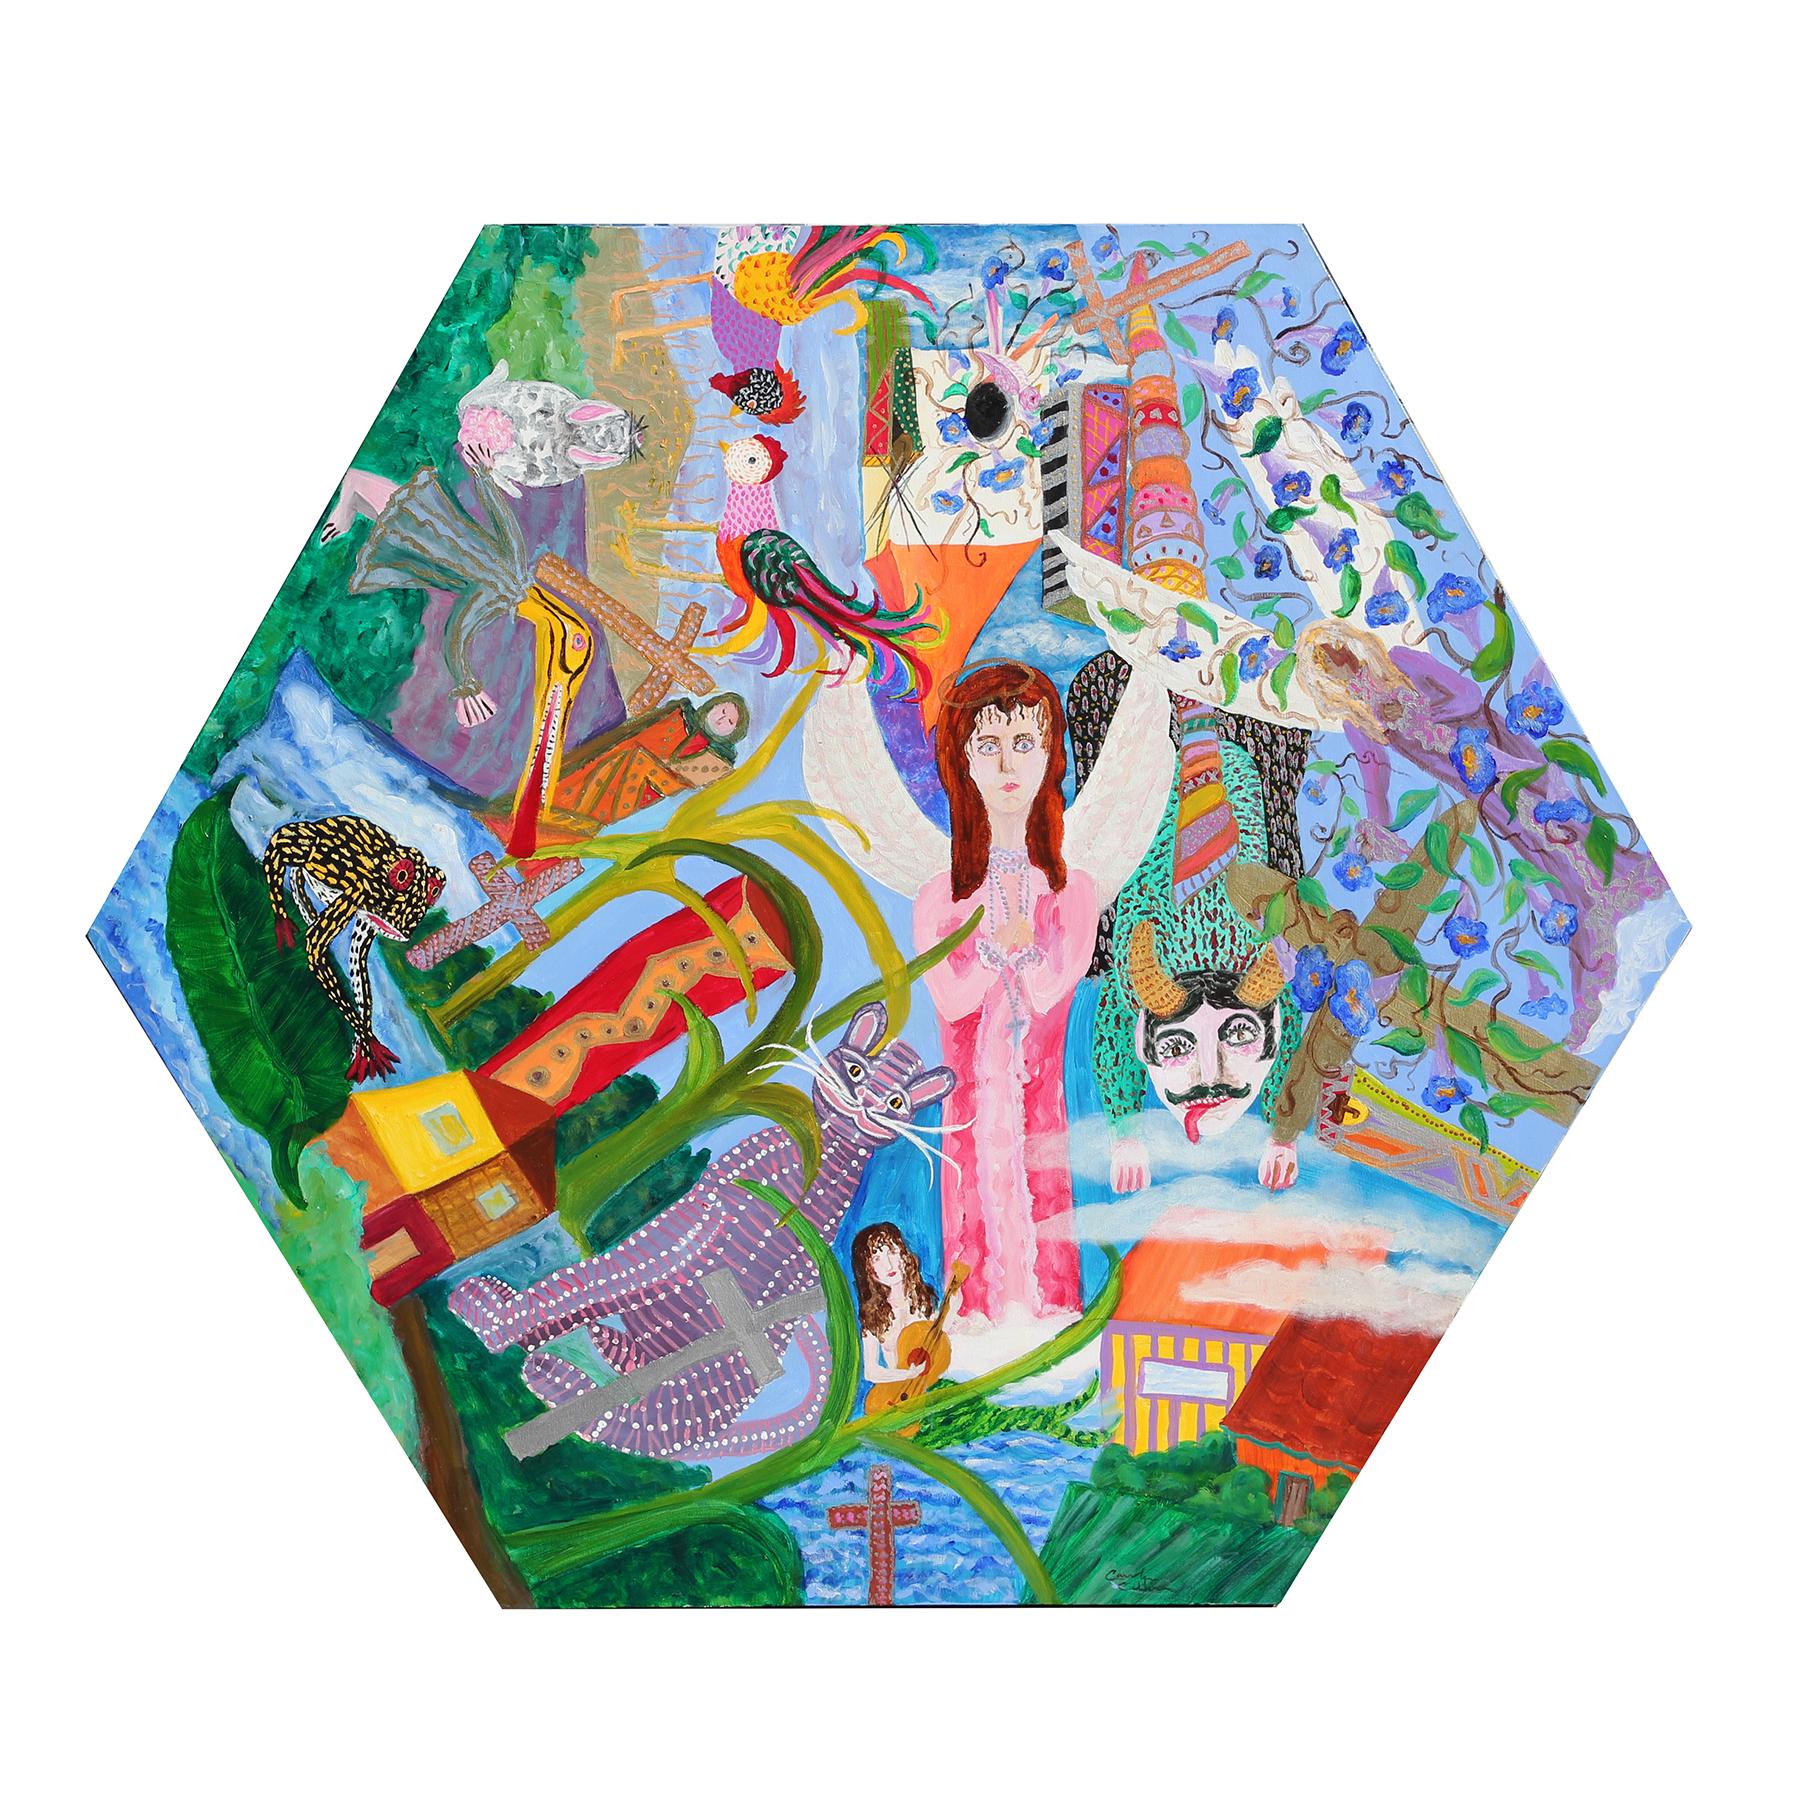 Peinture sur toile hexagonale figurative abstraite colorée « célébration de la vie » 